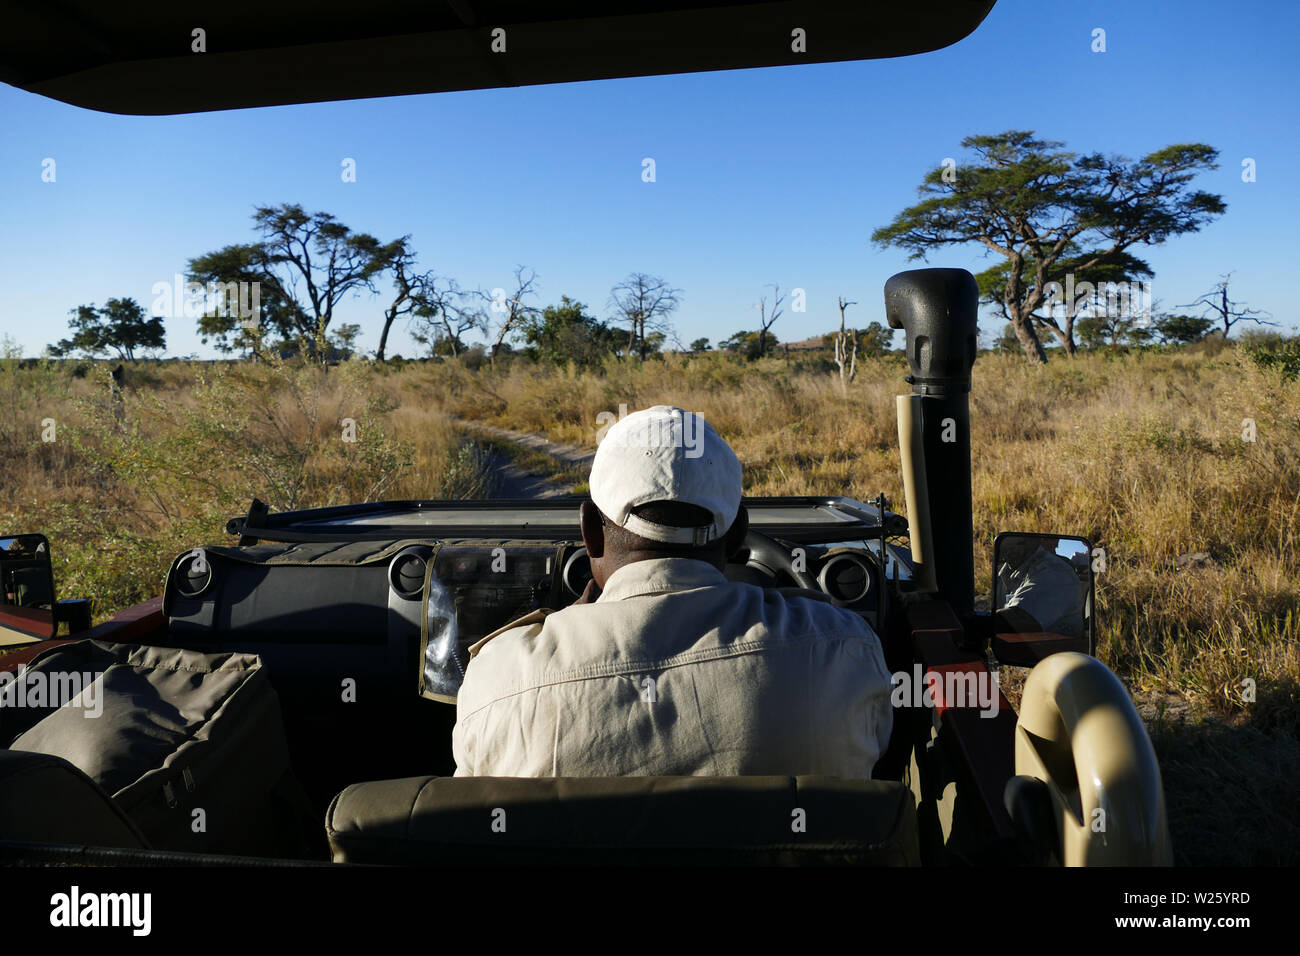 Camión Safari vista desde atrás Foto de stock